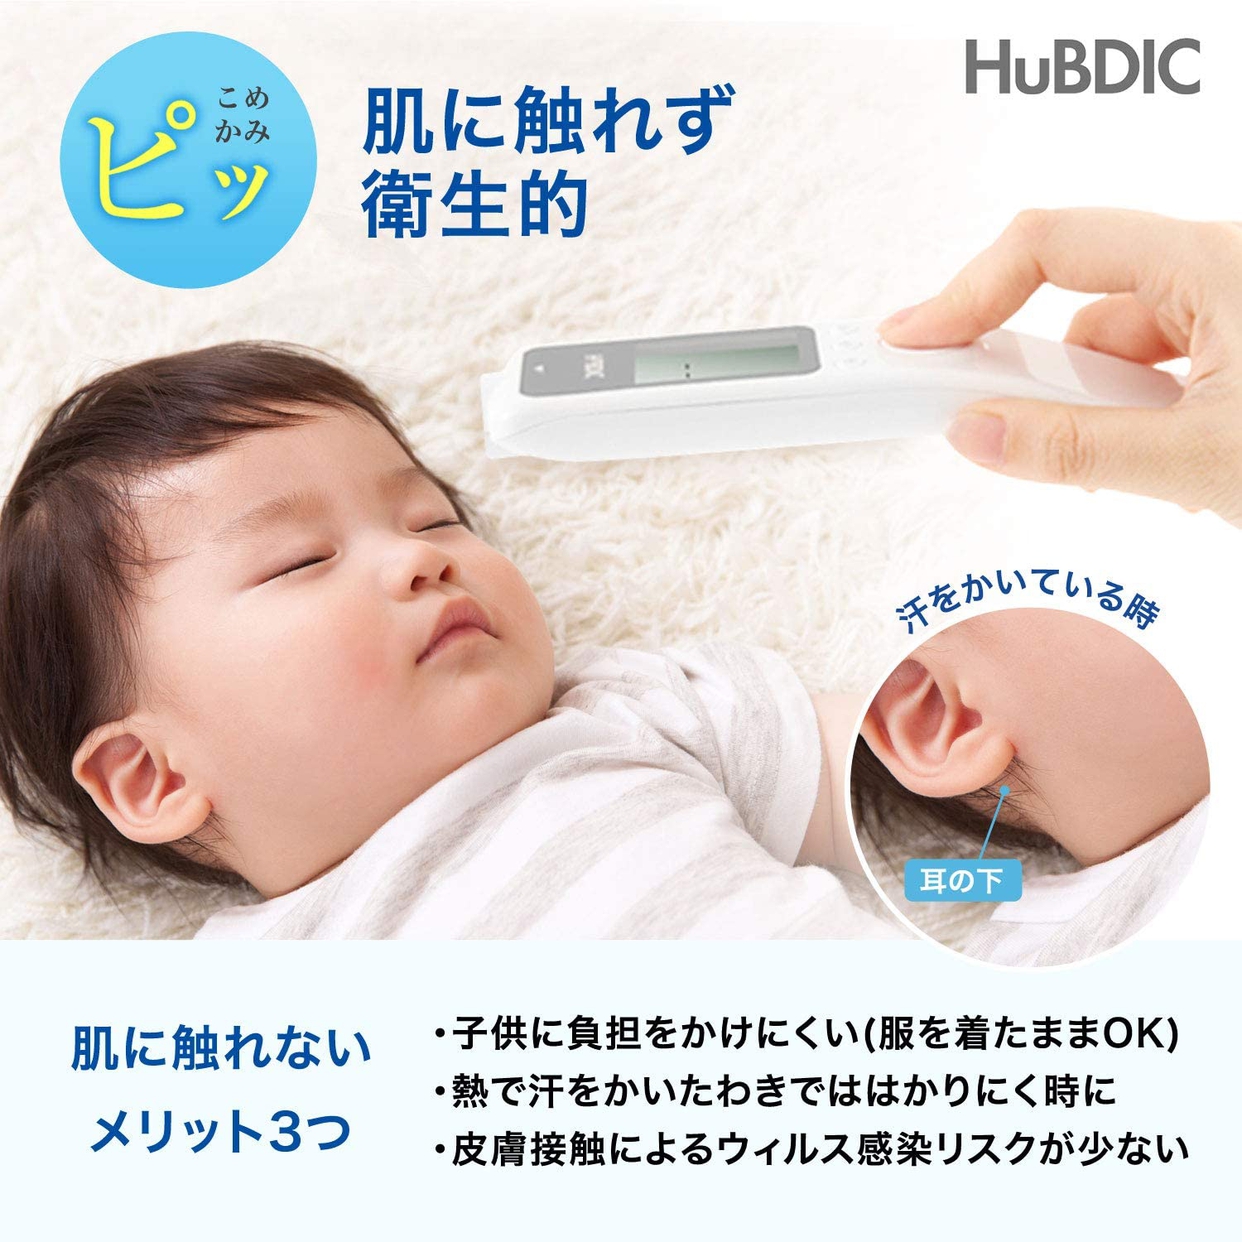 HuBDIC(ヒューデリック) 非接触体温計1000 HFS-1000の商品画像5 